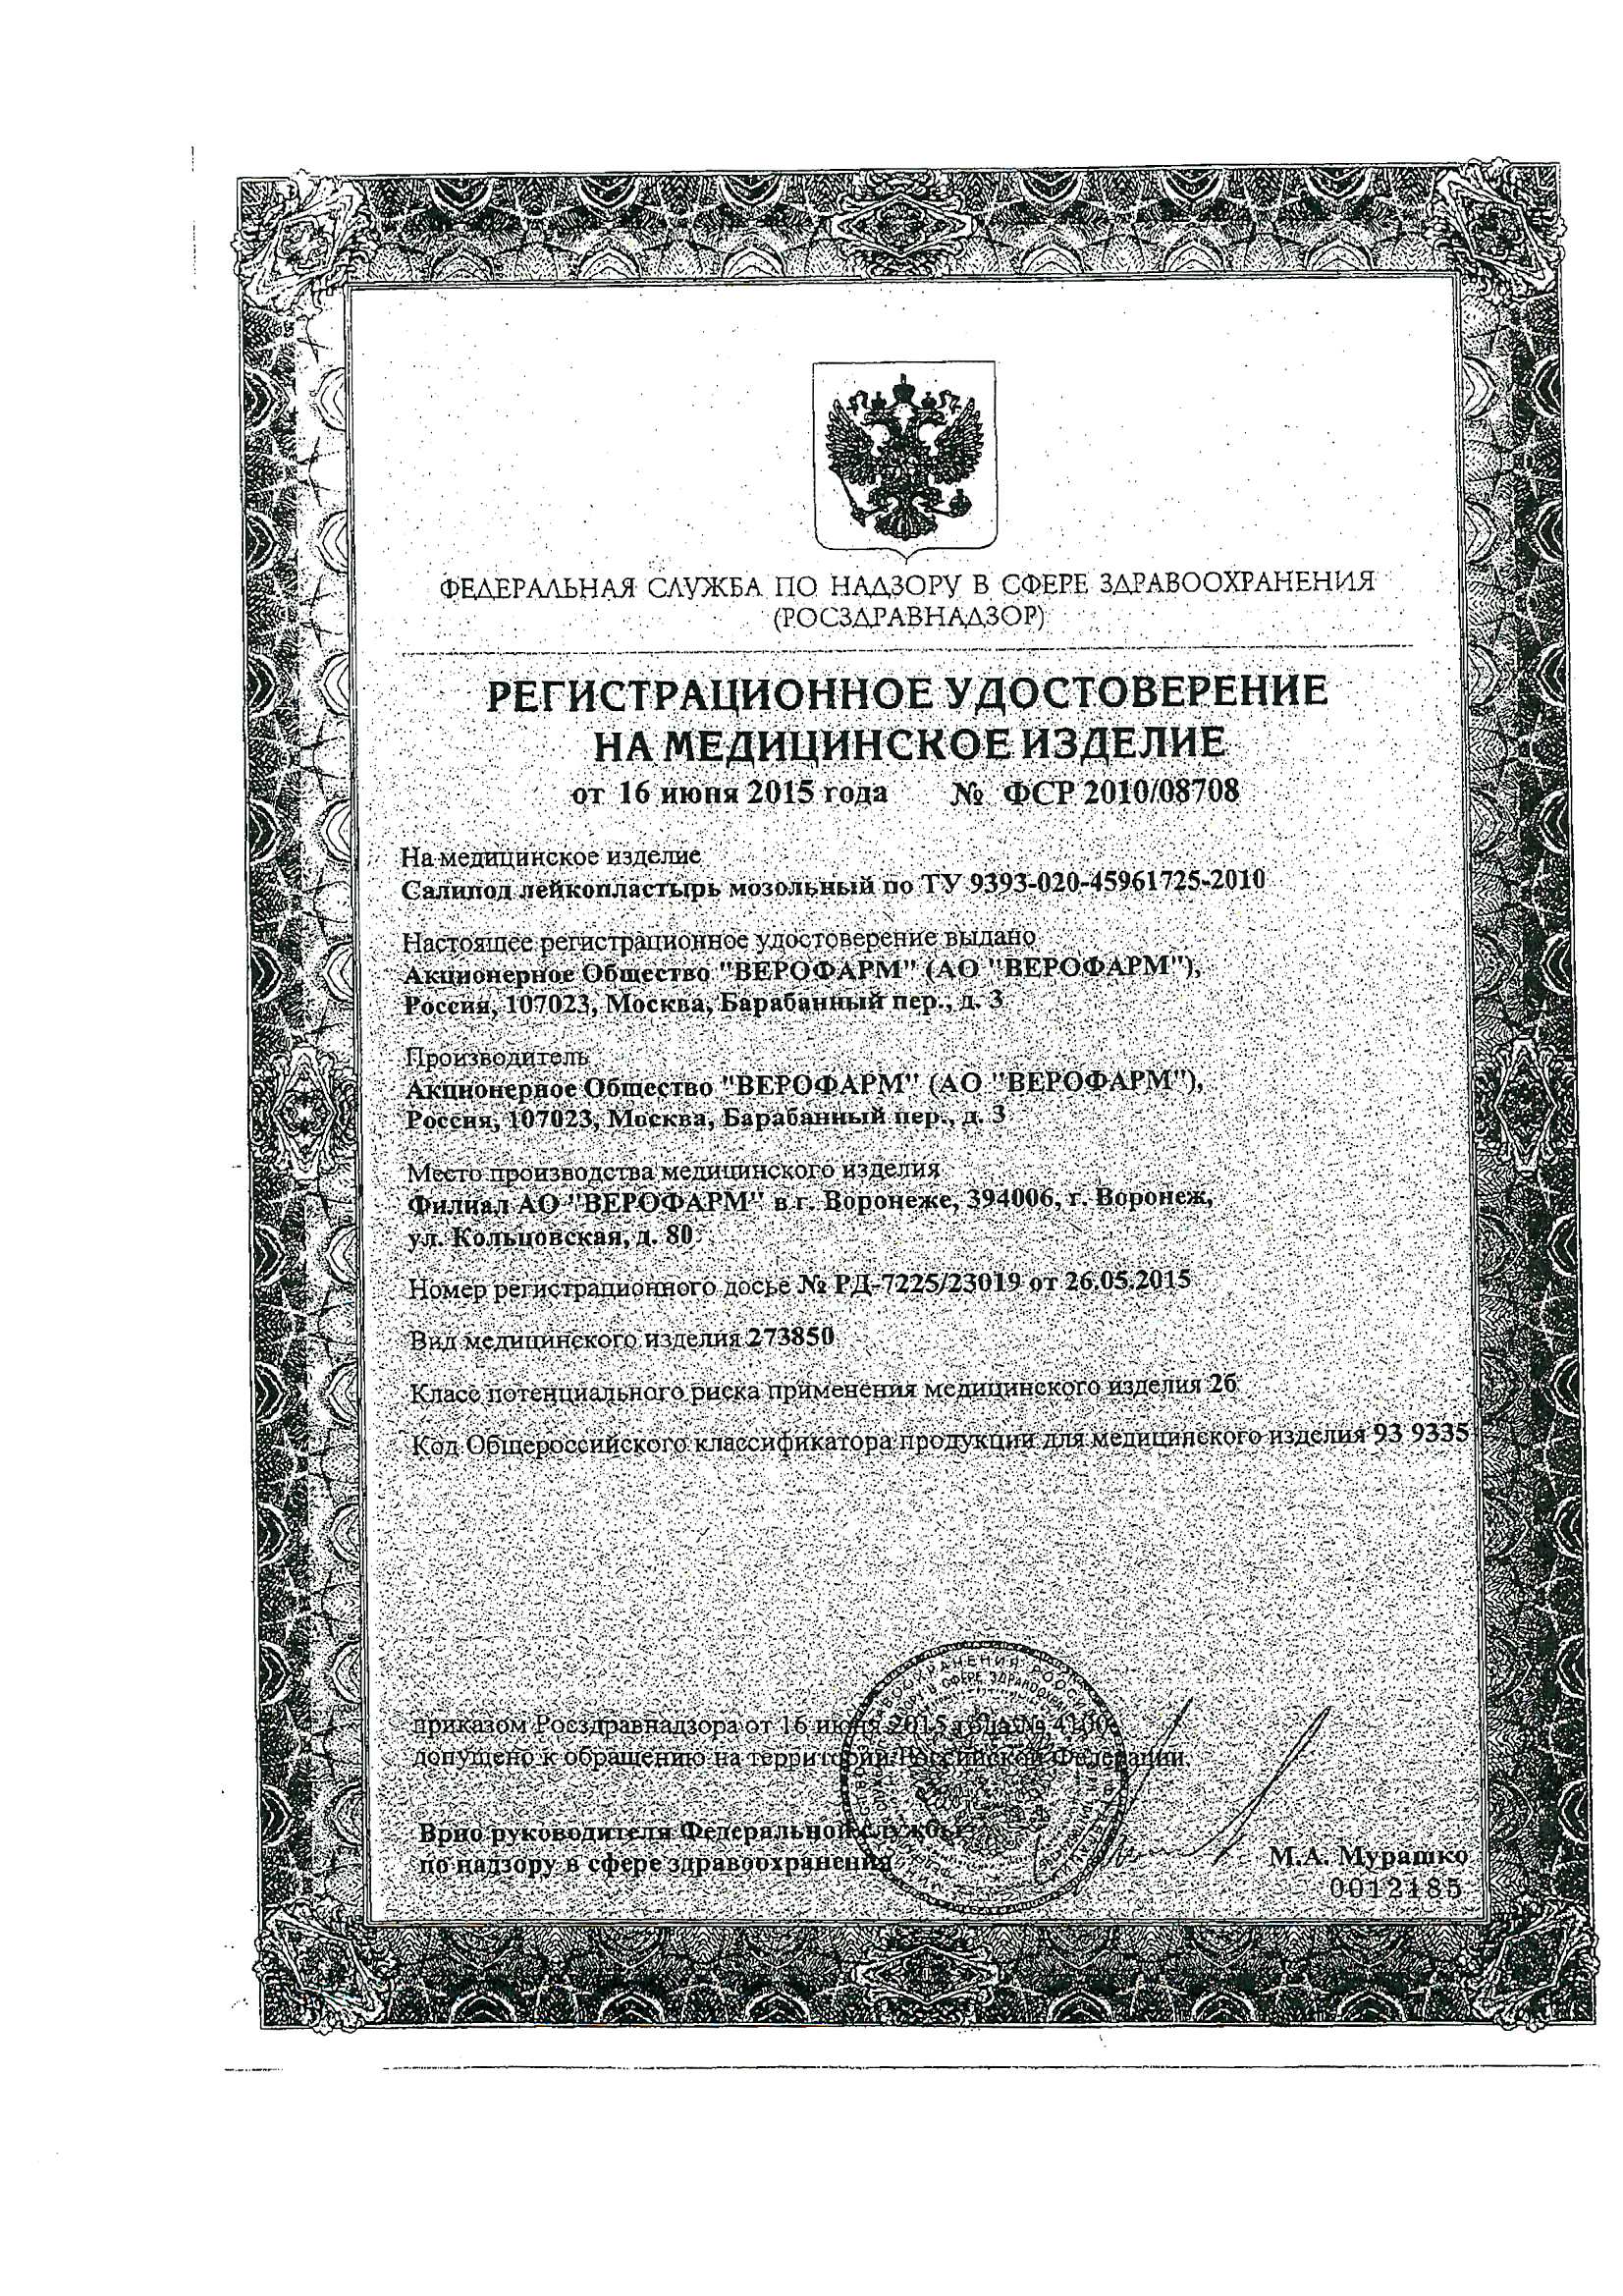 Пластырь Салипод регистрационное удостоверение